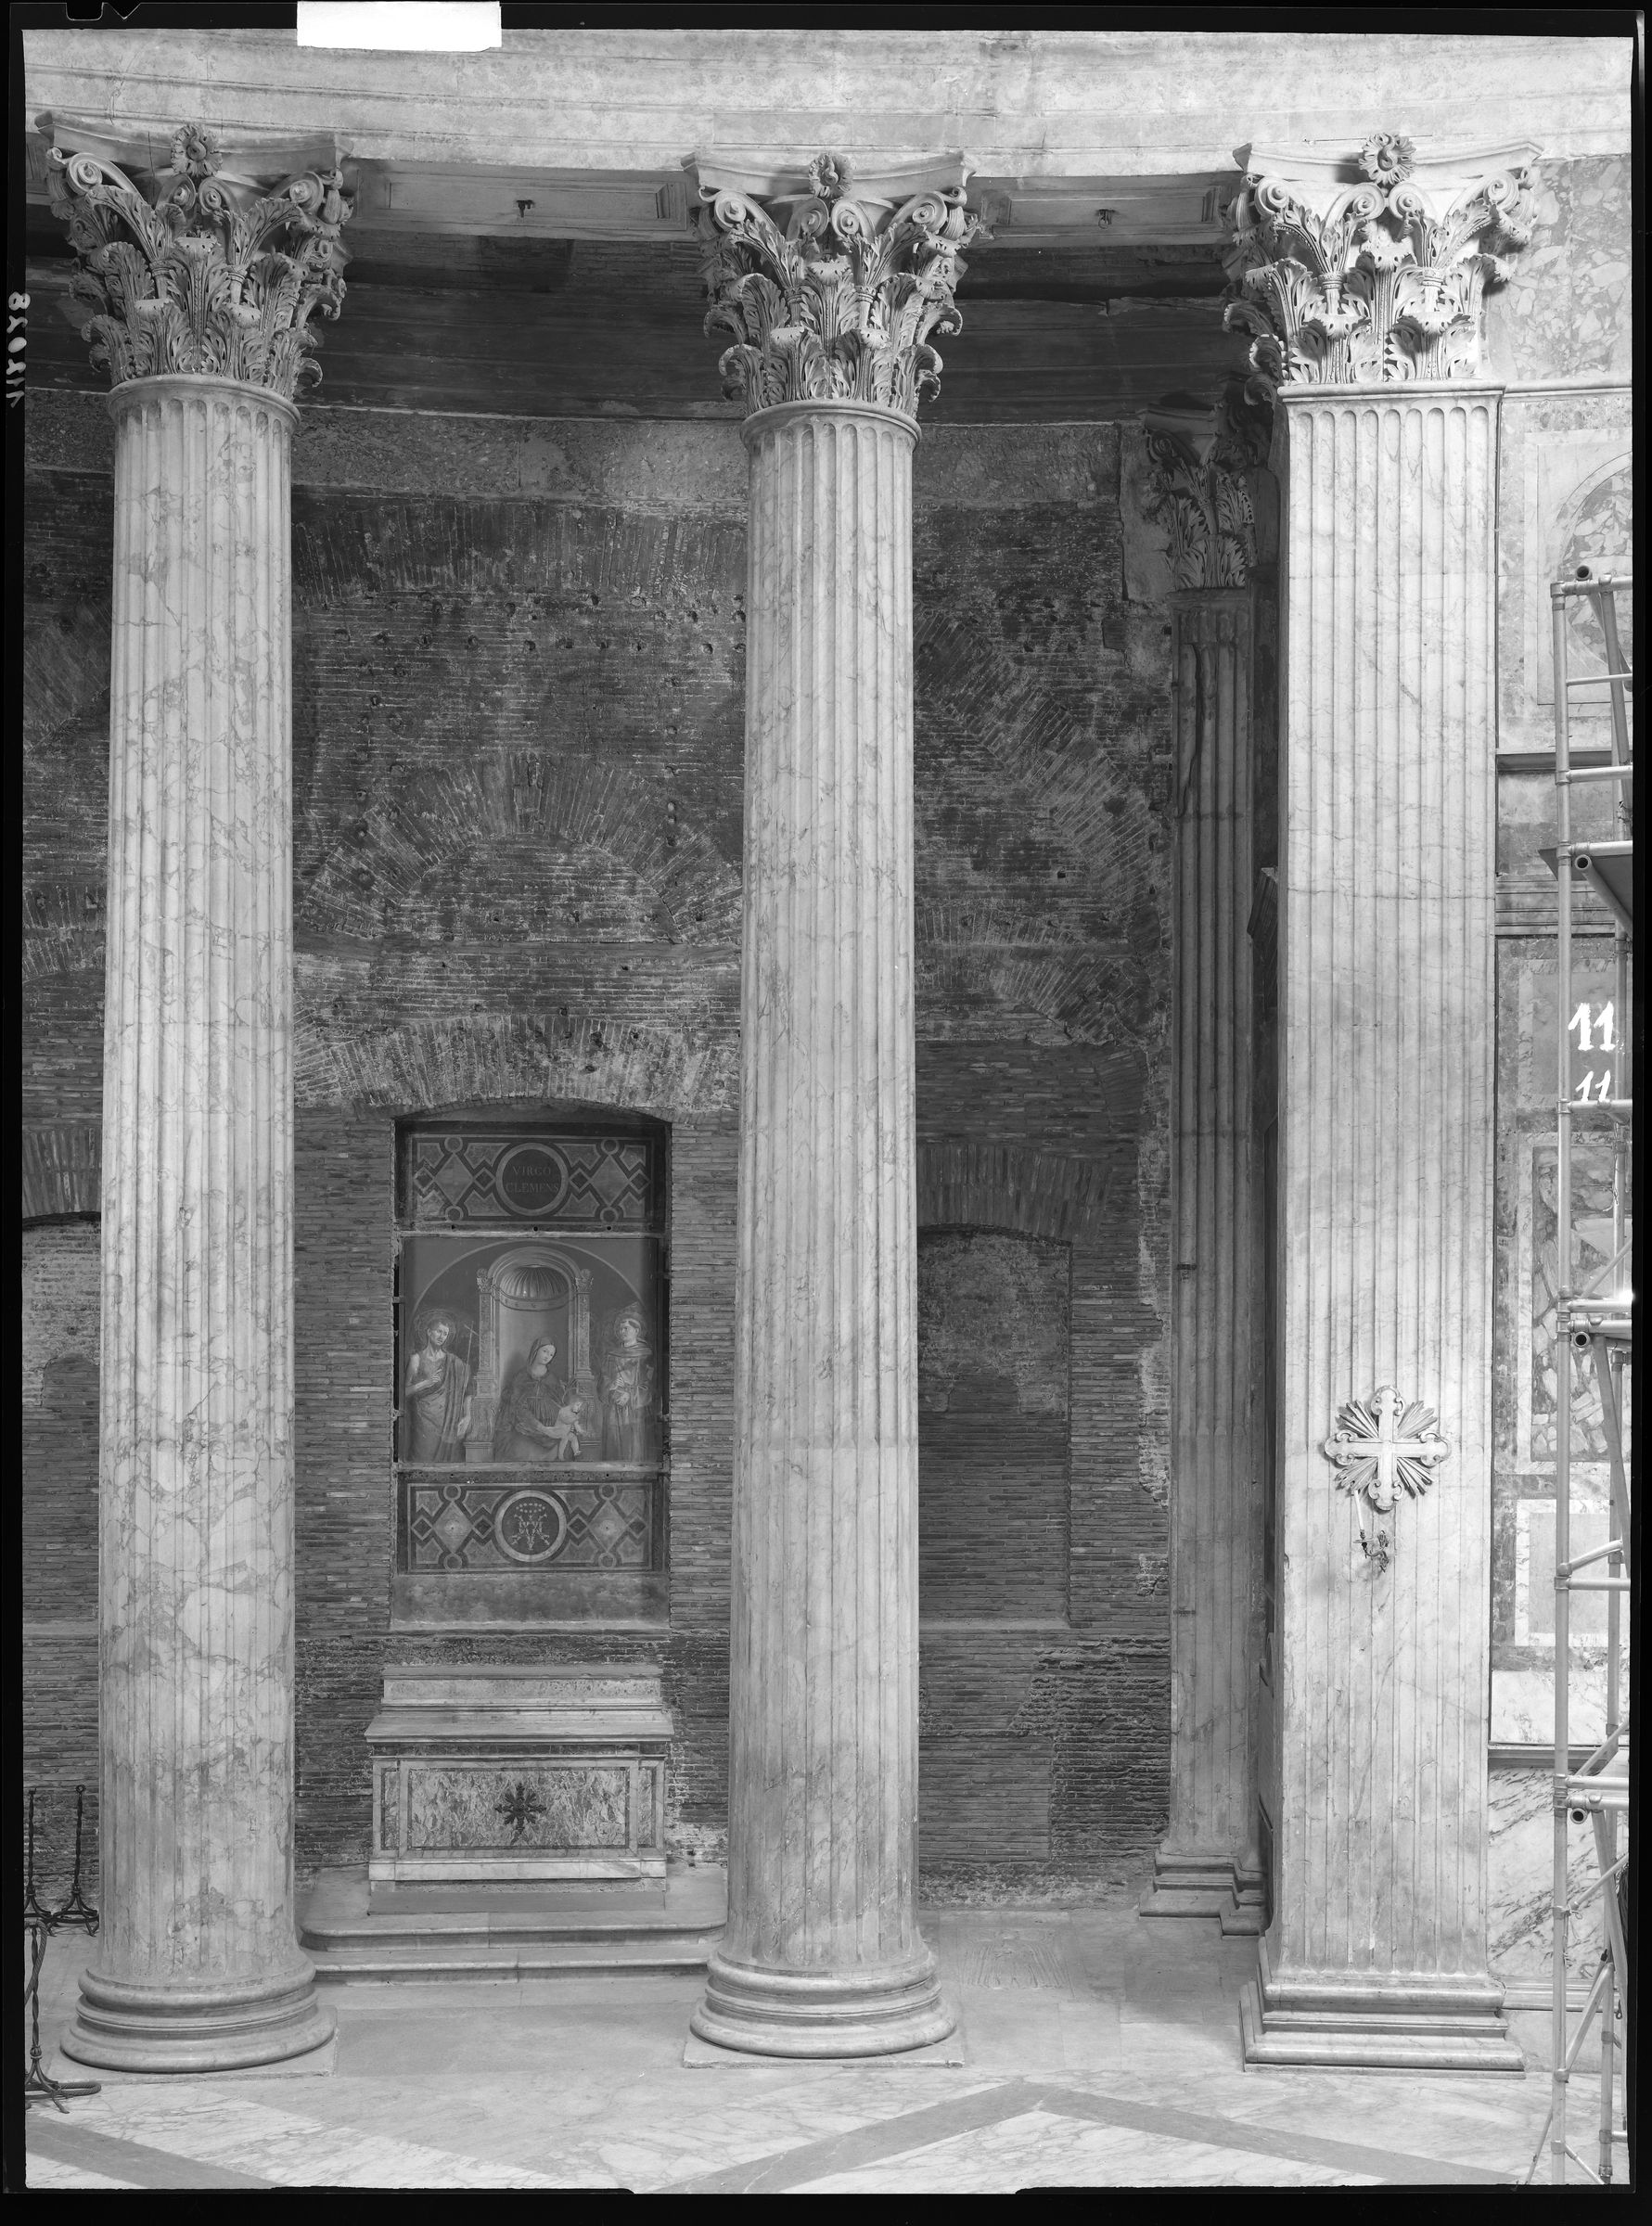 Fotografo non identificato, Roma - Pantheon,1951-2000, 18x24 cm, E112028